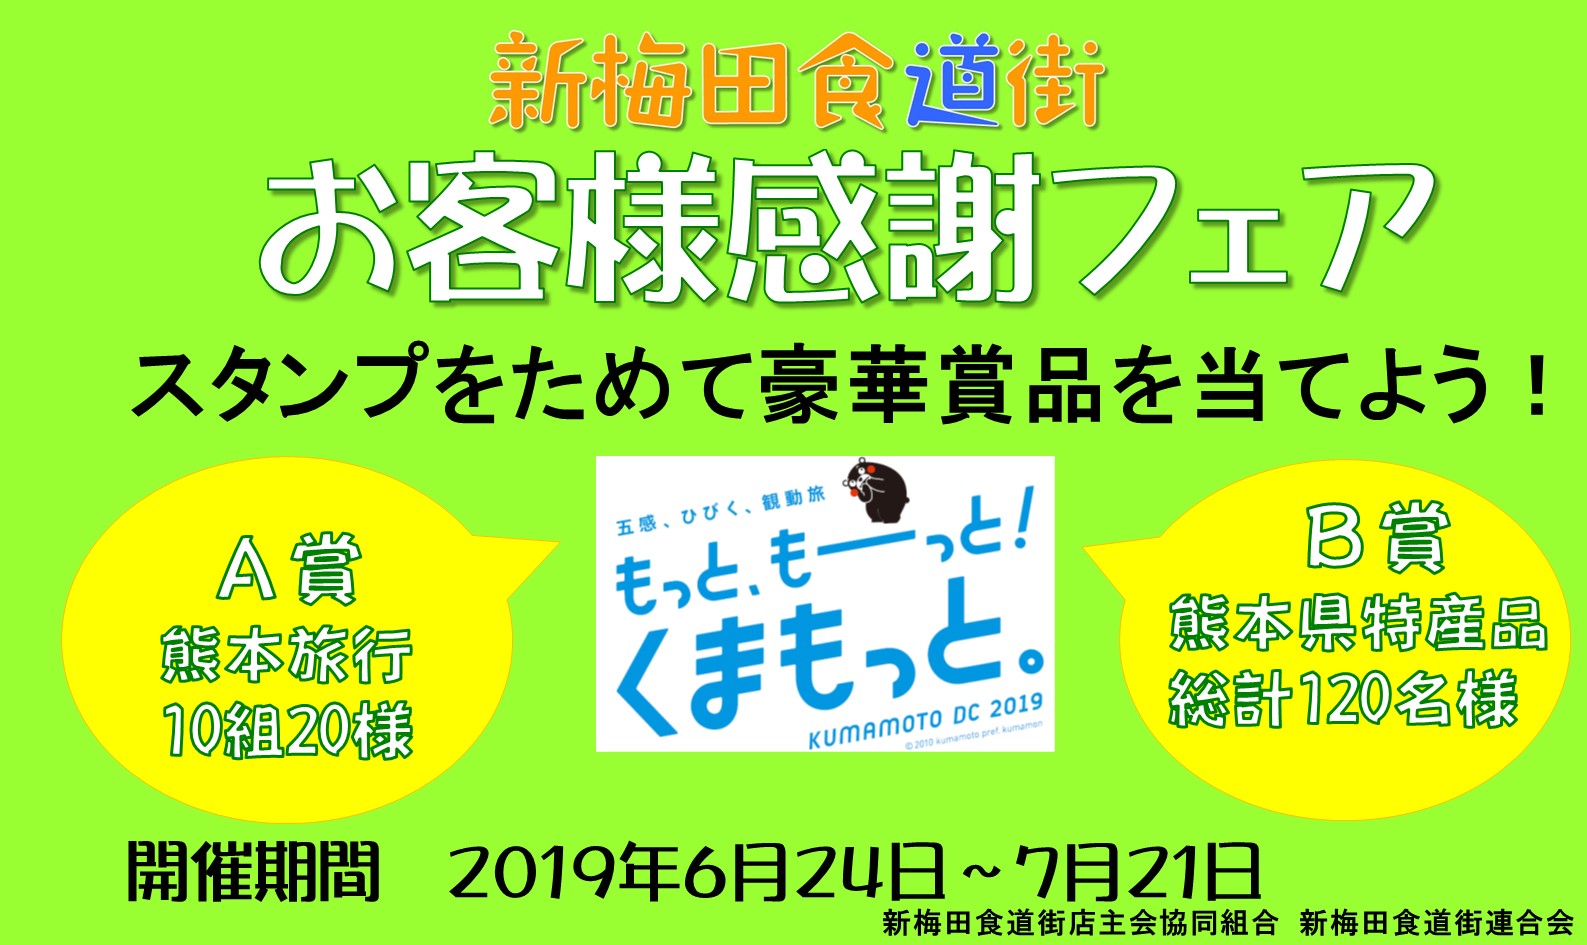 新梅田食道街「お客様感謝フェア」を開催します。